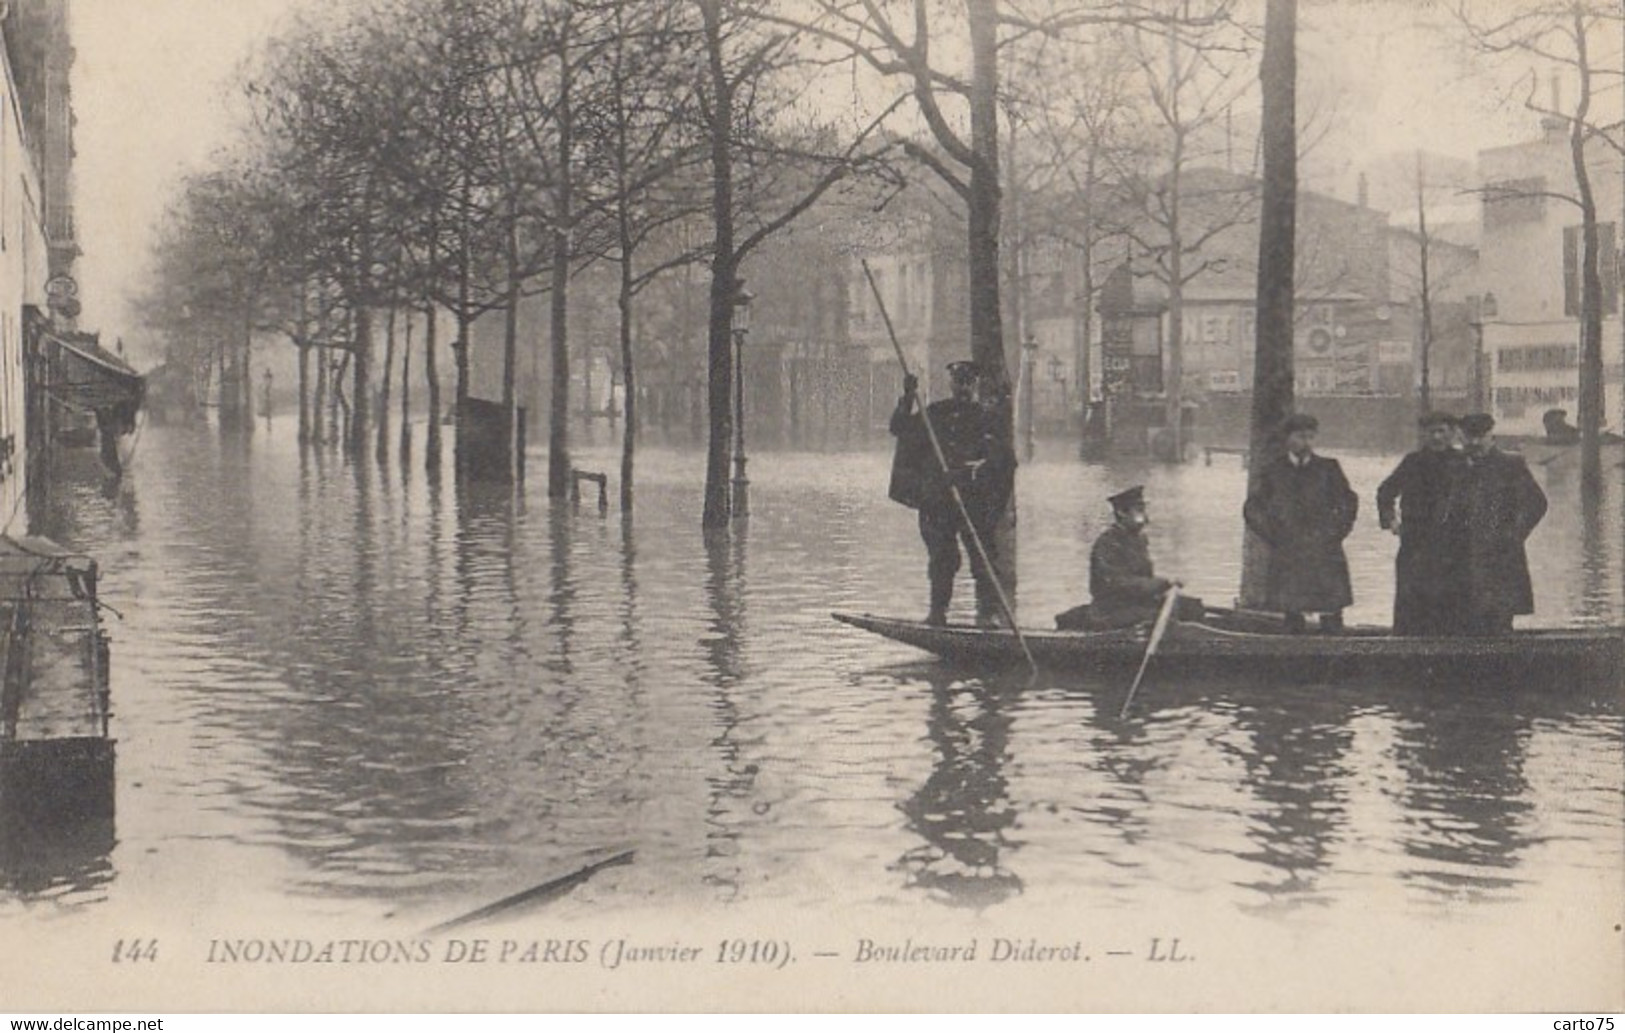 Evènements - Inondations - Paris Janvier 1910 - Boulevard Diderot - Überschwemmungen